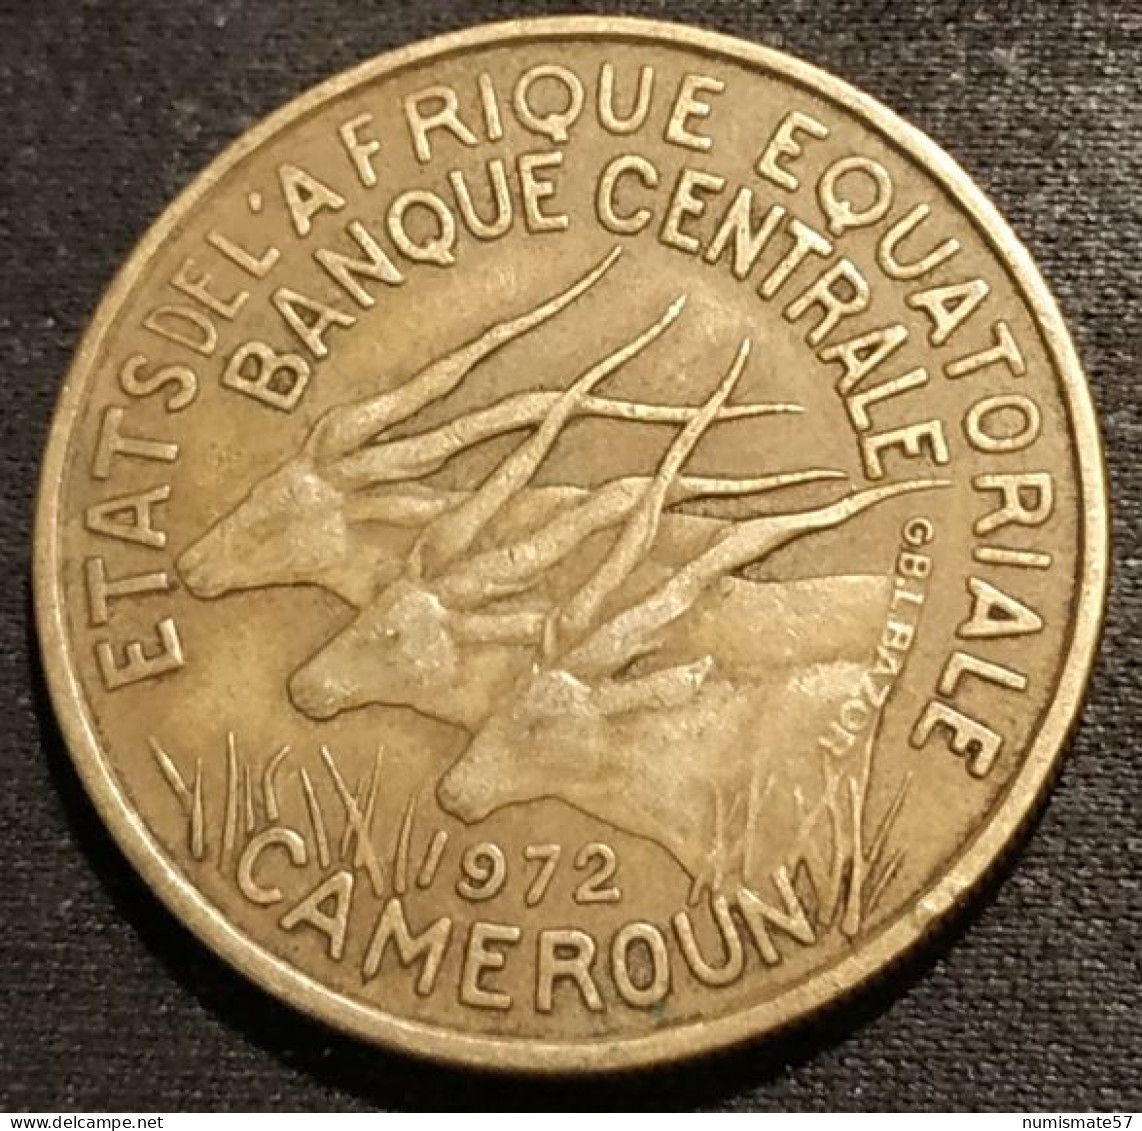 CAMEROUN - 25 FRANCS 1972 - KM 4a - ( ETATS DE L'AFRIQUE EQUATORIALE ) - Kameroen